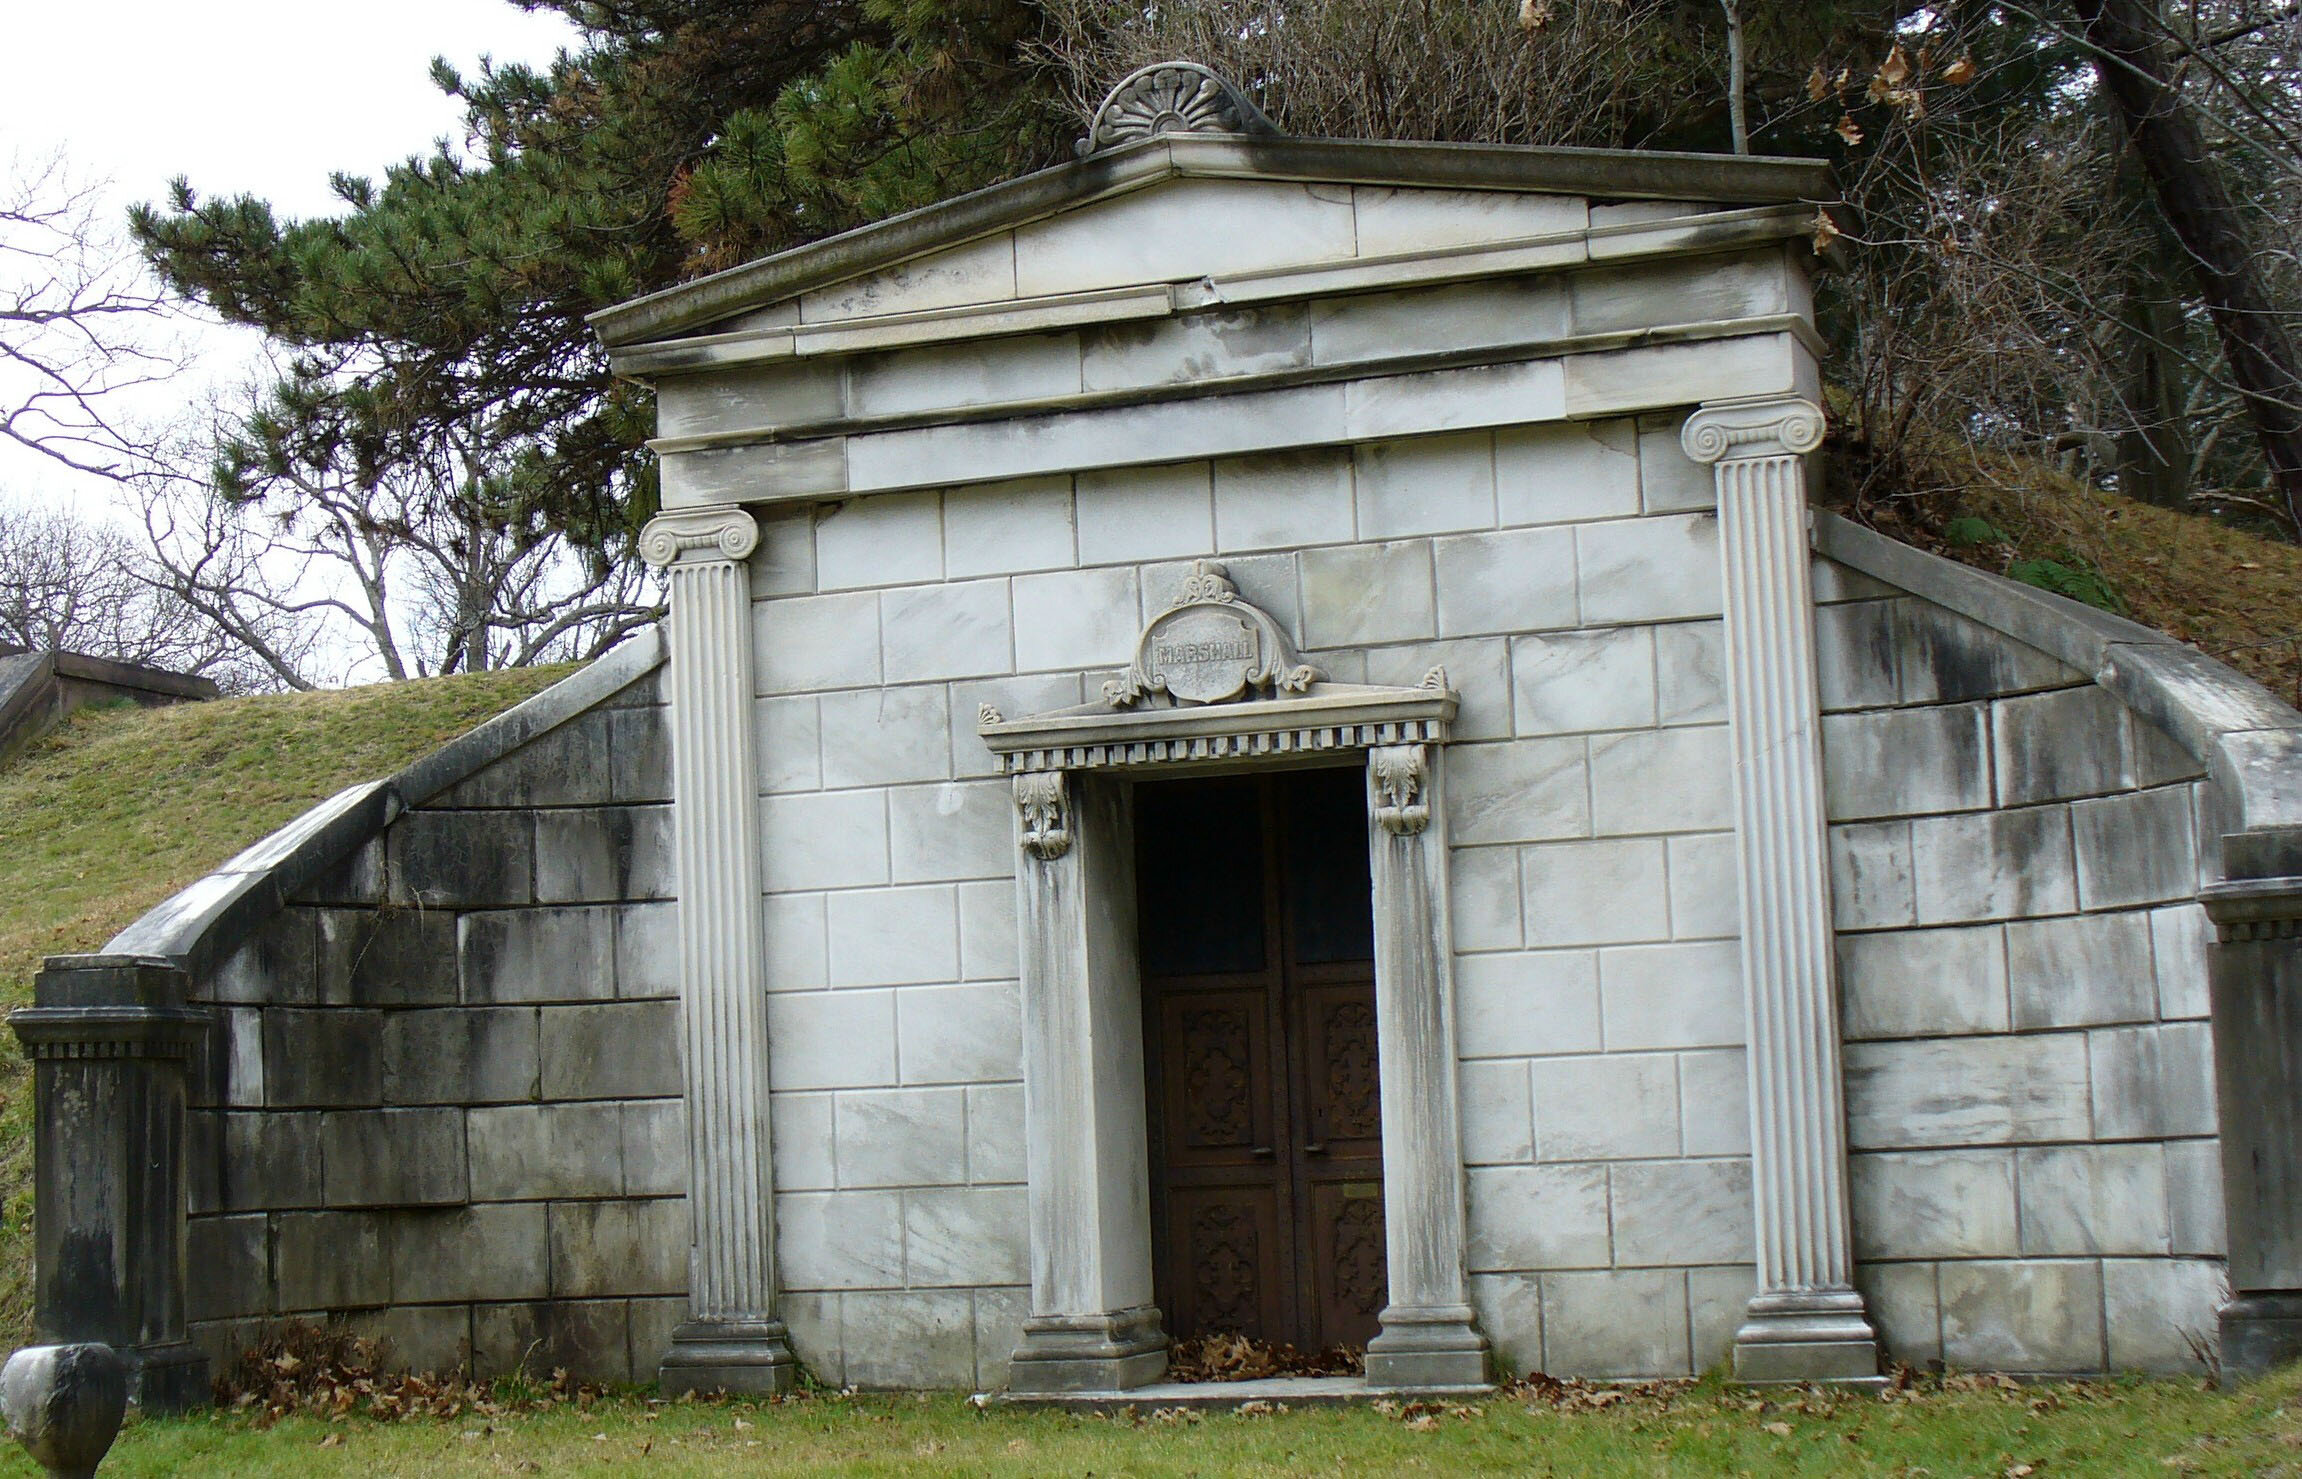 The Marshall Mausoleum